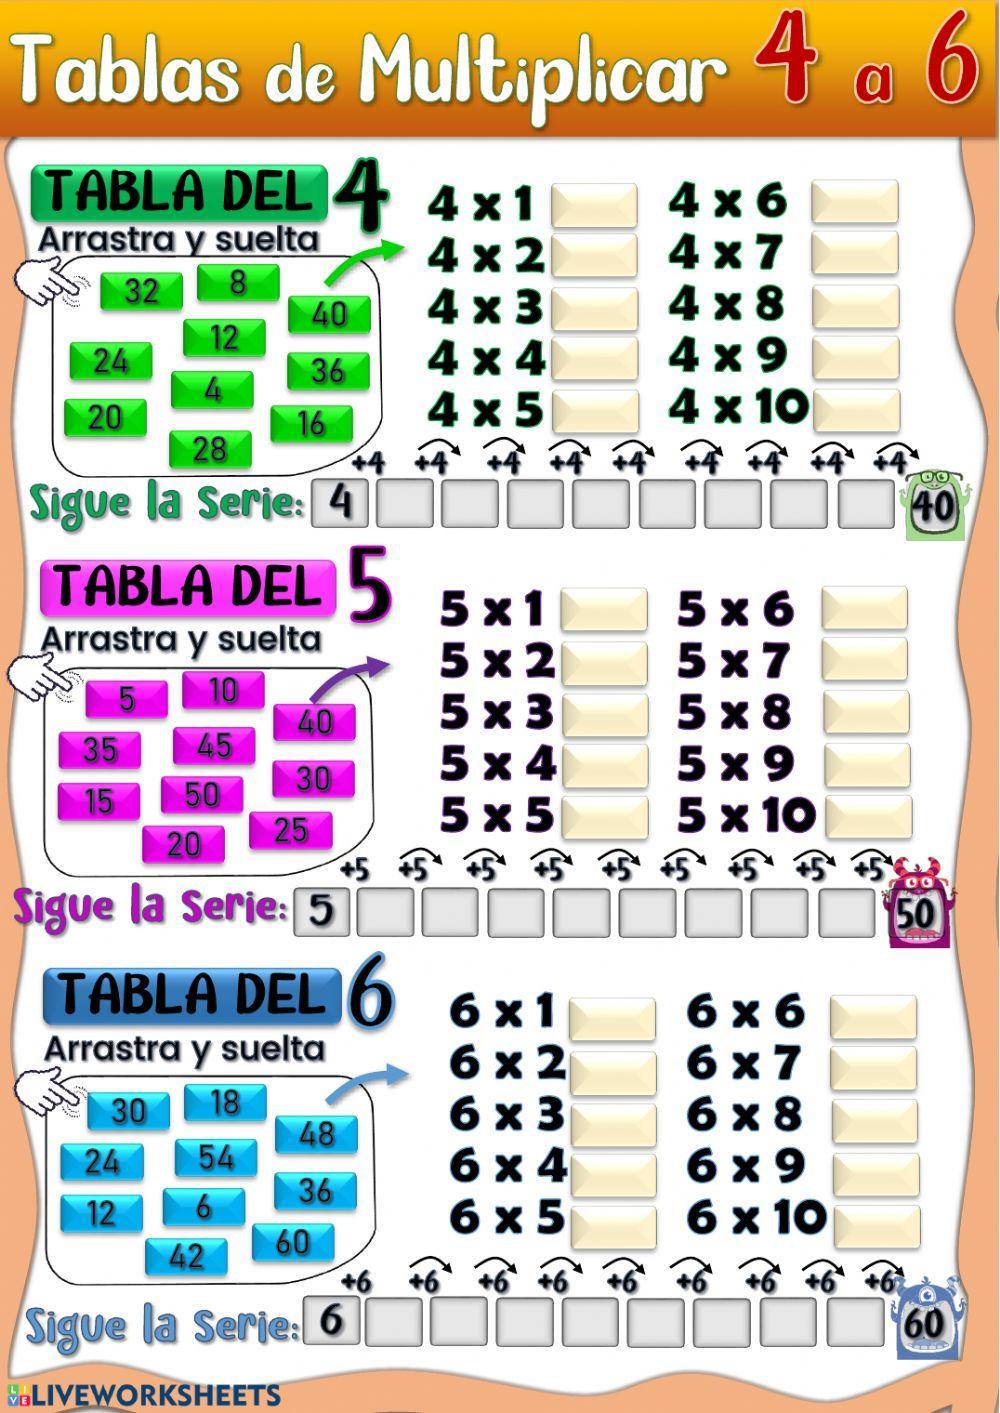 Ejercicios De La Tabla De Multiplicar Del 4 Tablas de Multiplicar del 4, 5 y 6. worksheet | Live Worksheets